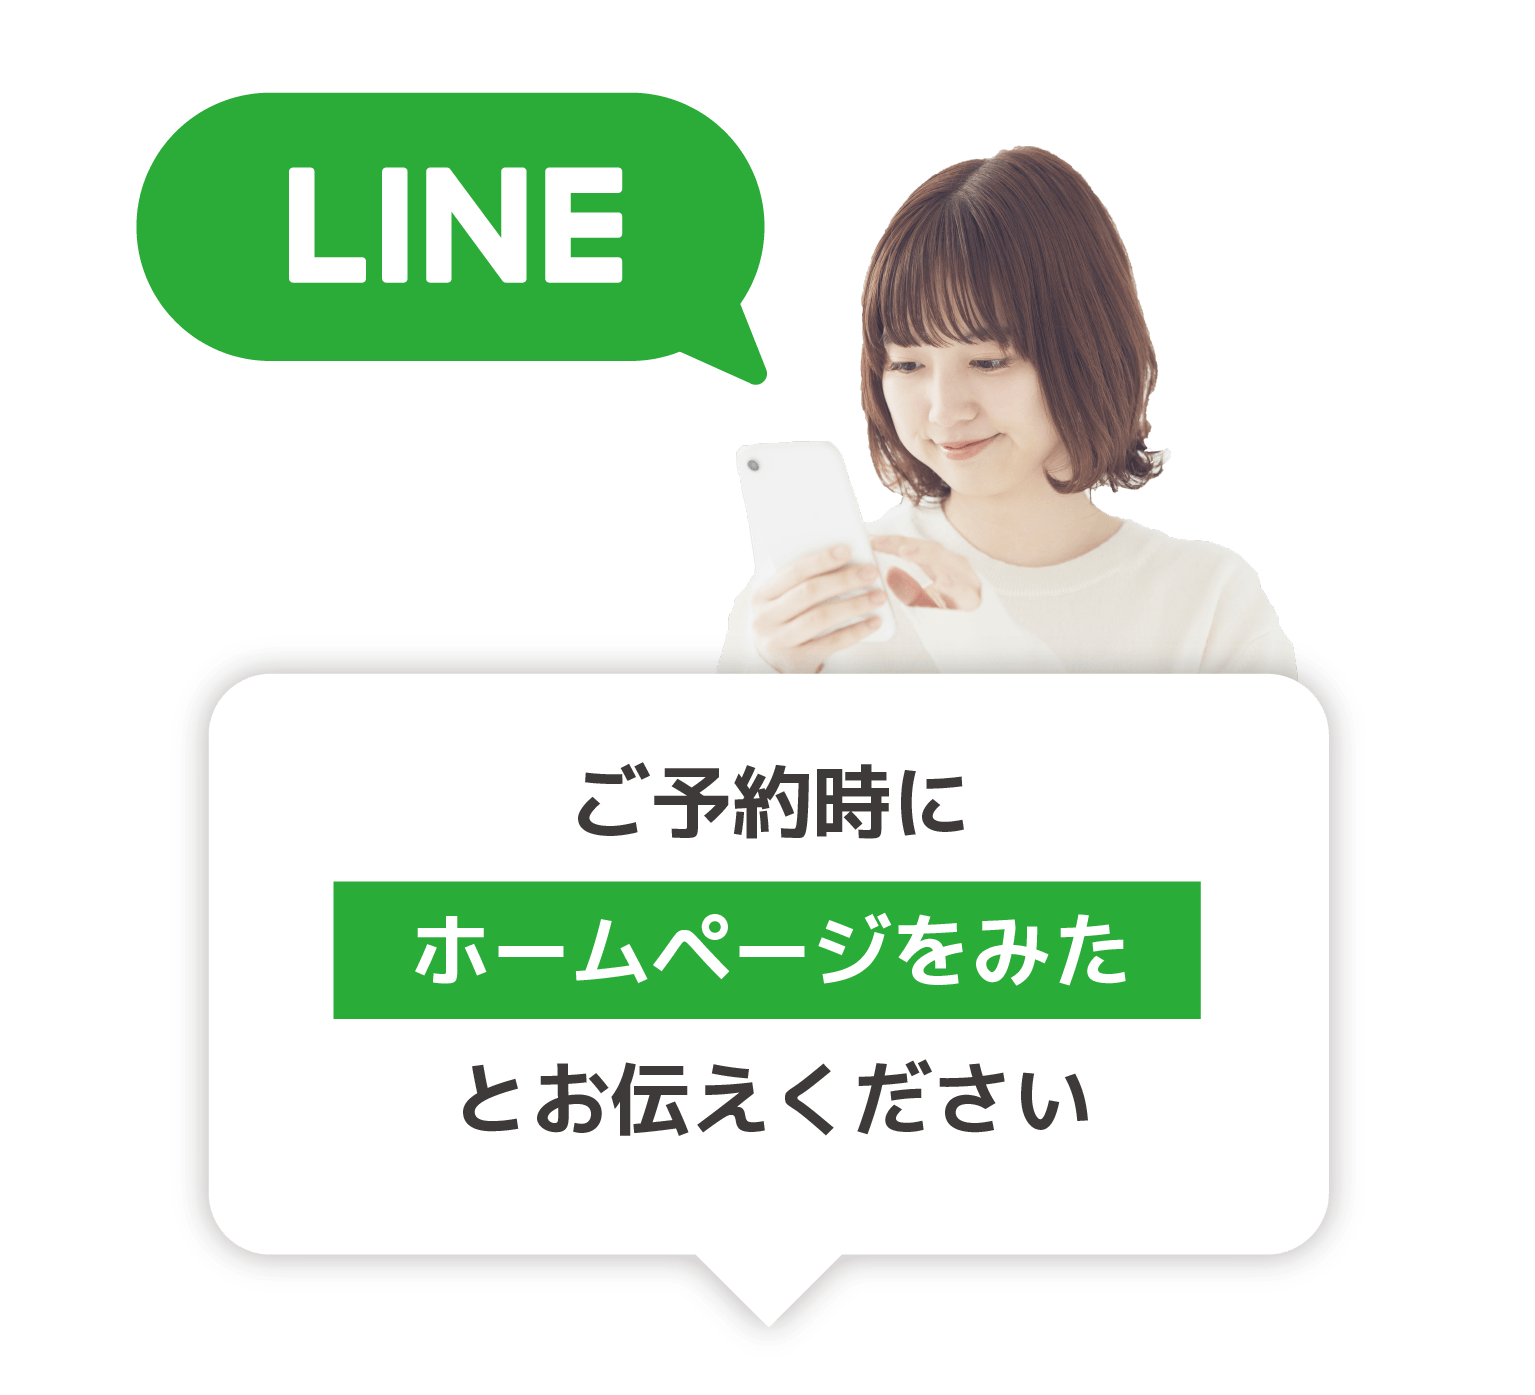 Line@,スマートフォン用の画像,整体サロンリフラ,リフラ,整体サロンrefla,refla,鎌ヶ谷,プライベートサロン